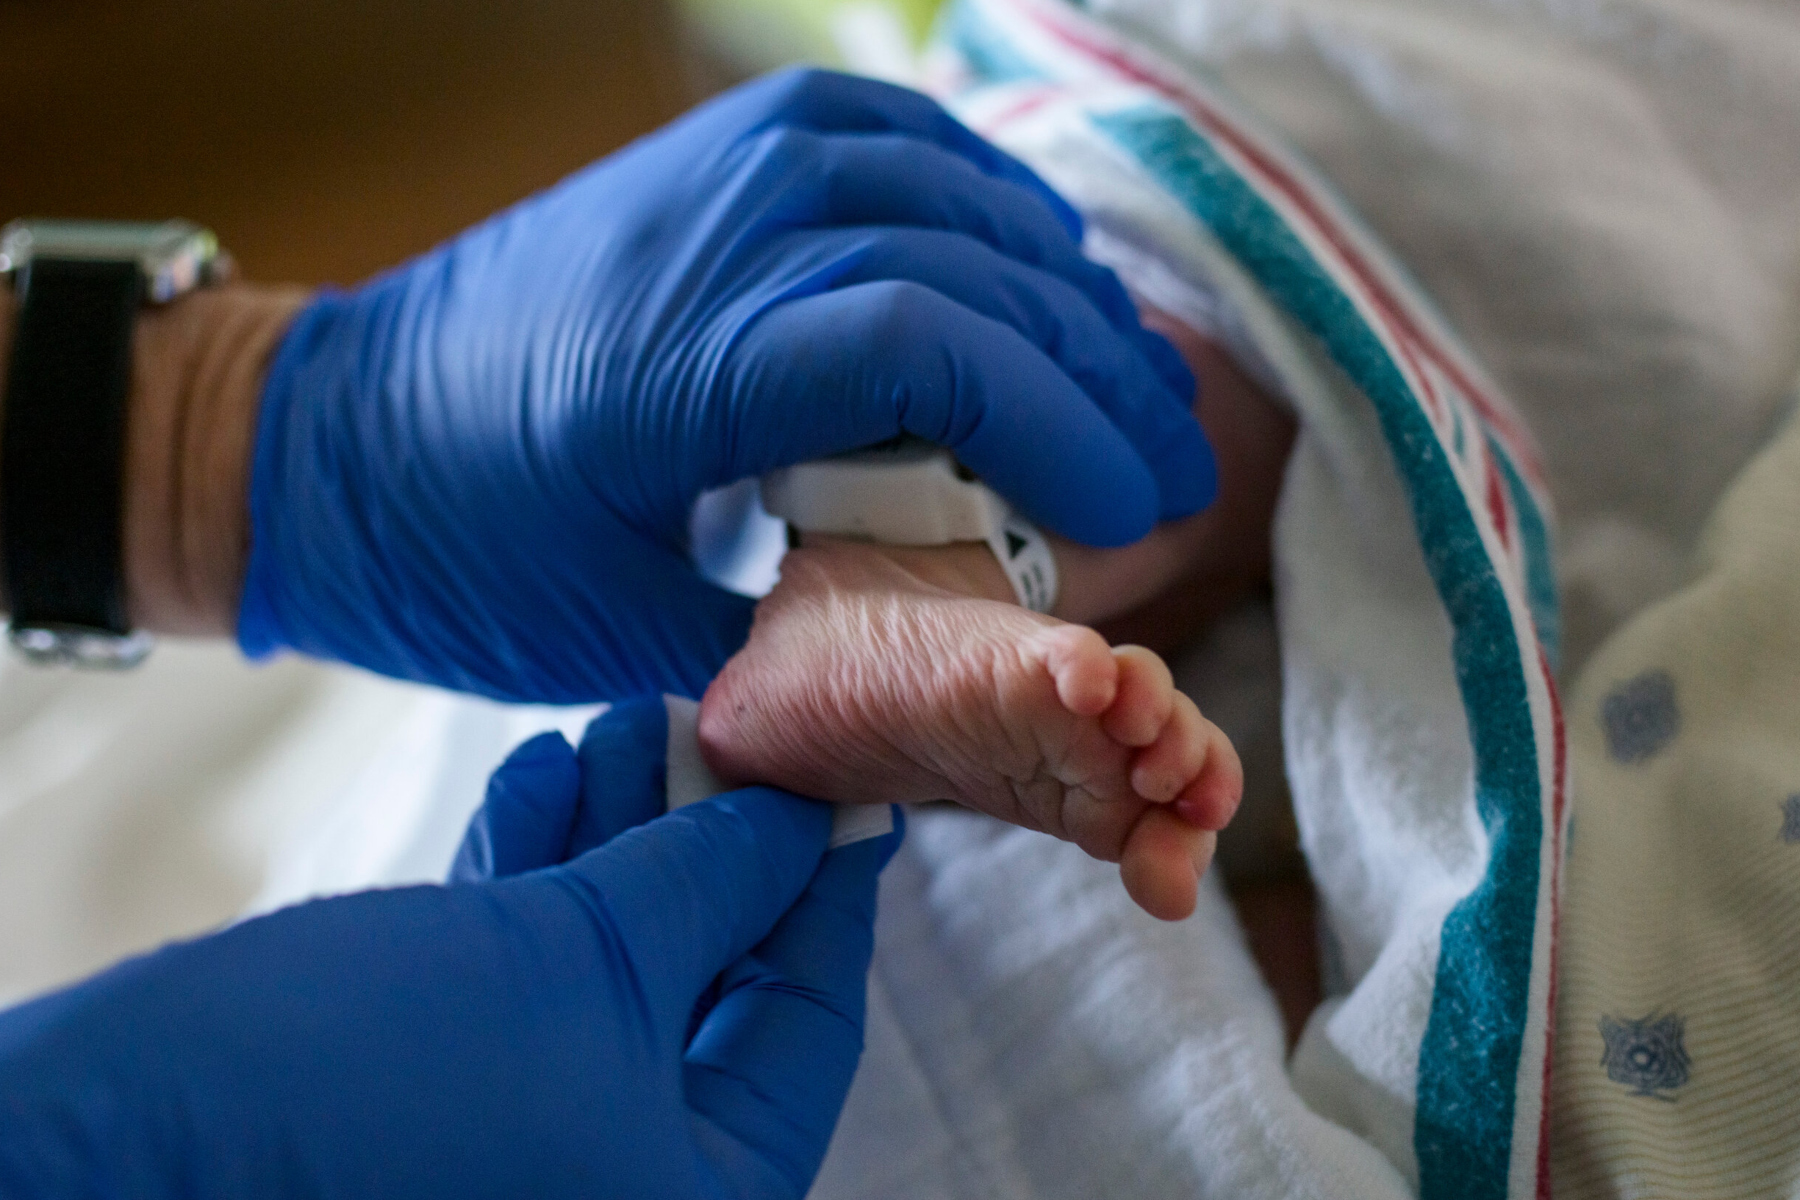 ΗΠΑ: Ο Covid-19 επηρέασε το ποσοστό γεννήσεων στις ΗΠΑ